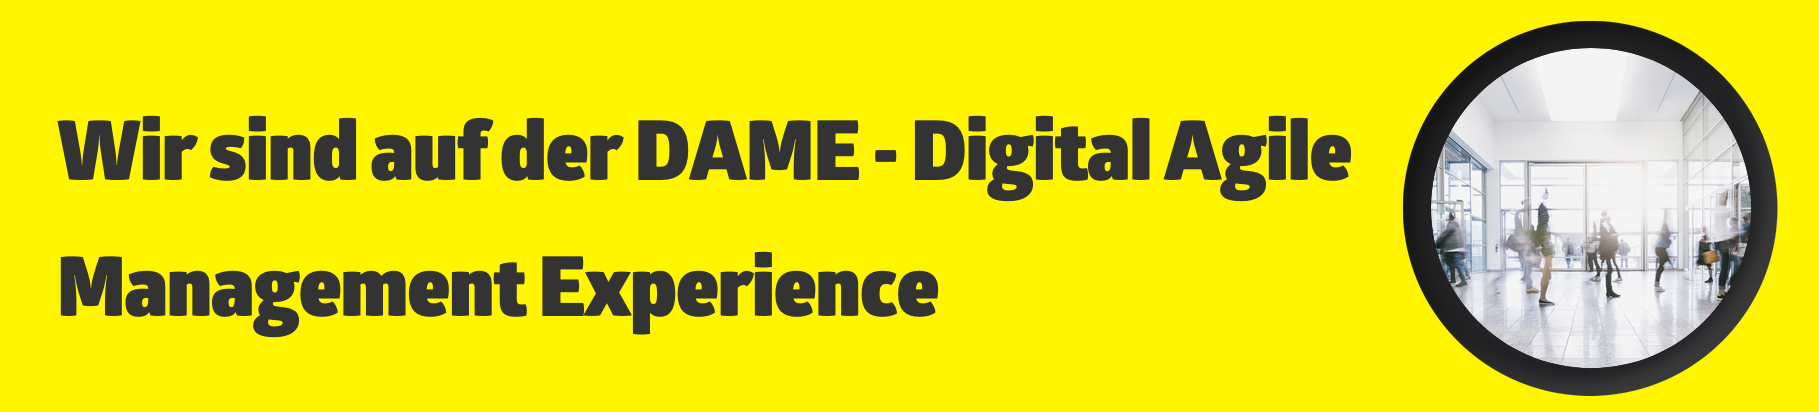 Wir sind auf der DAME - Digital Agile Management Experience